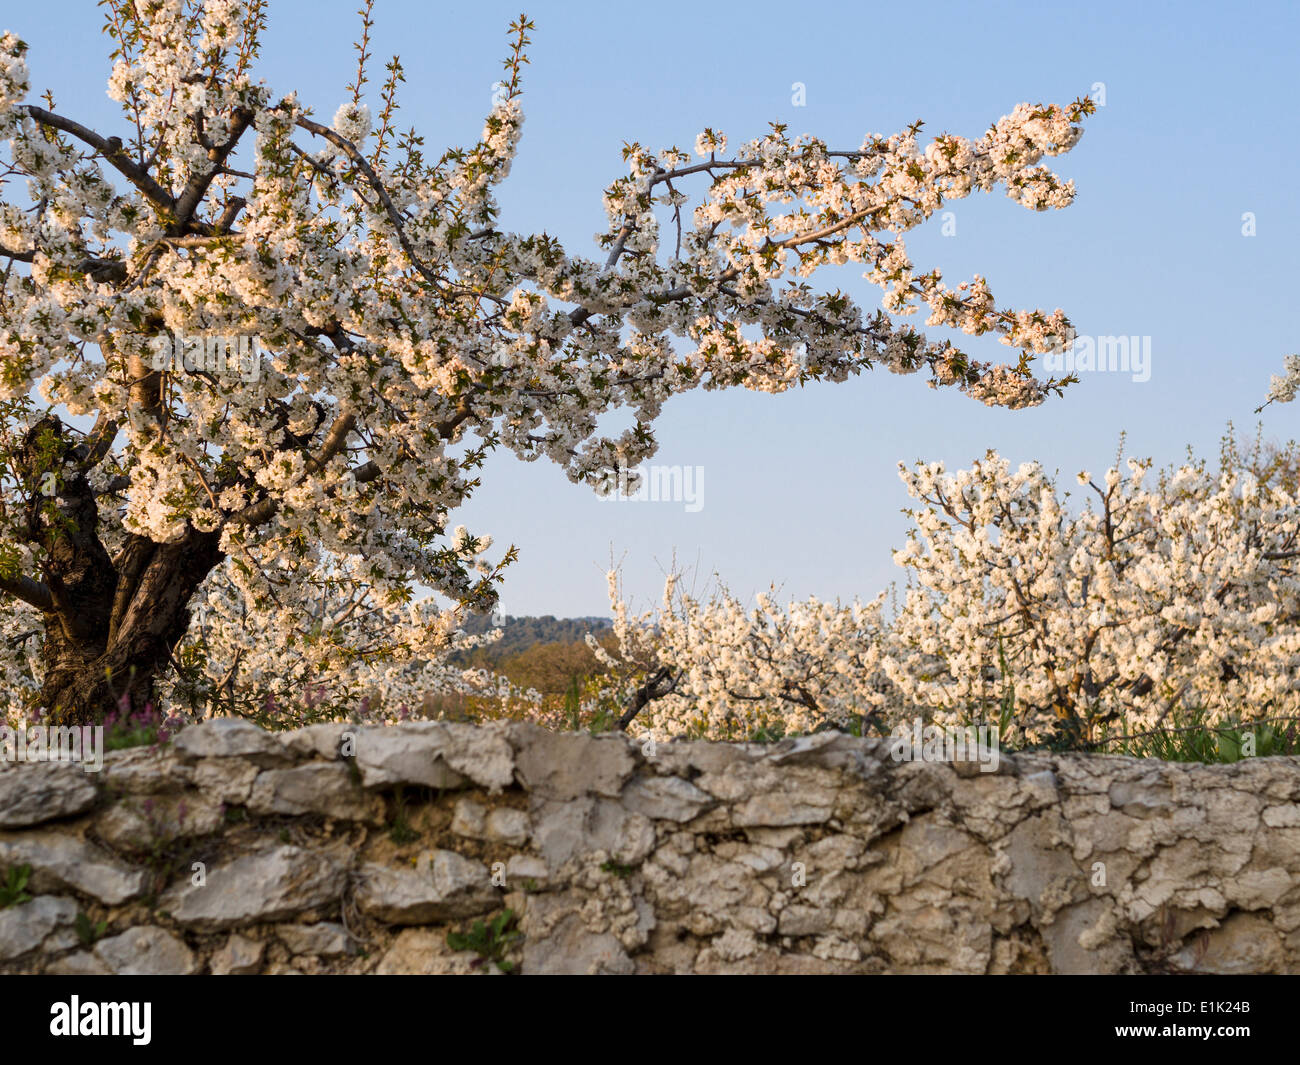 Printemps dans une ville fortifiée de Cherry Orchard. Un arbre chargé de fleurs de cerisier au-dessus d'un mur de pierre brute. Banque D'Images